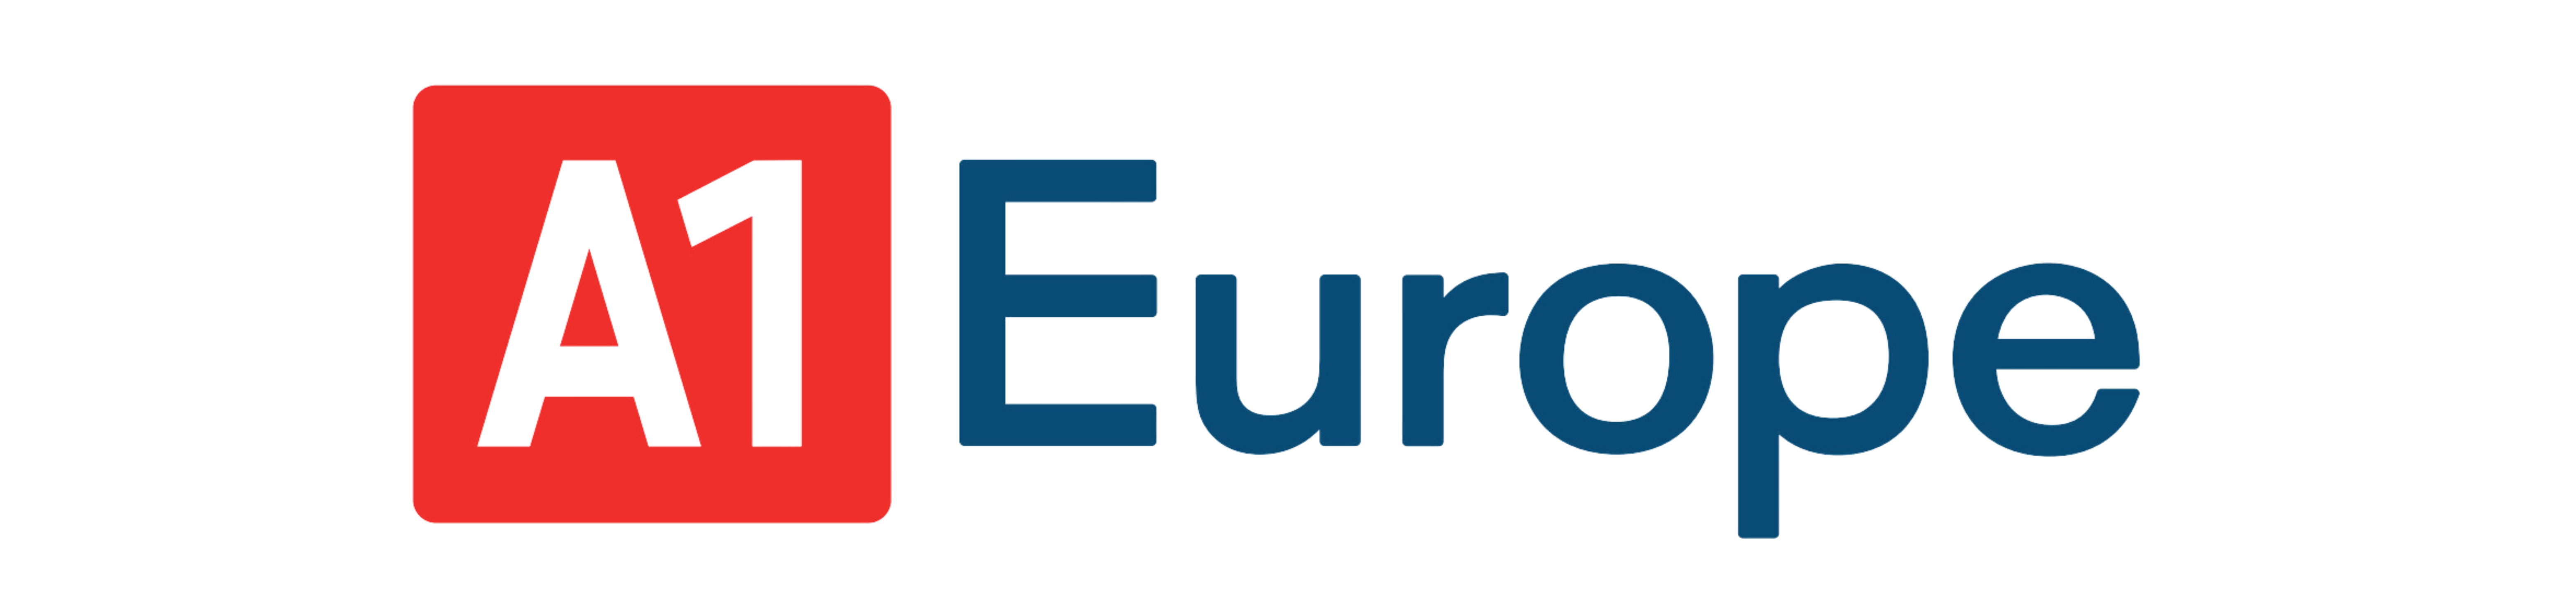 A1 Europe logo